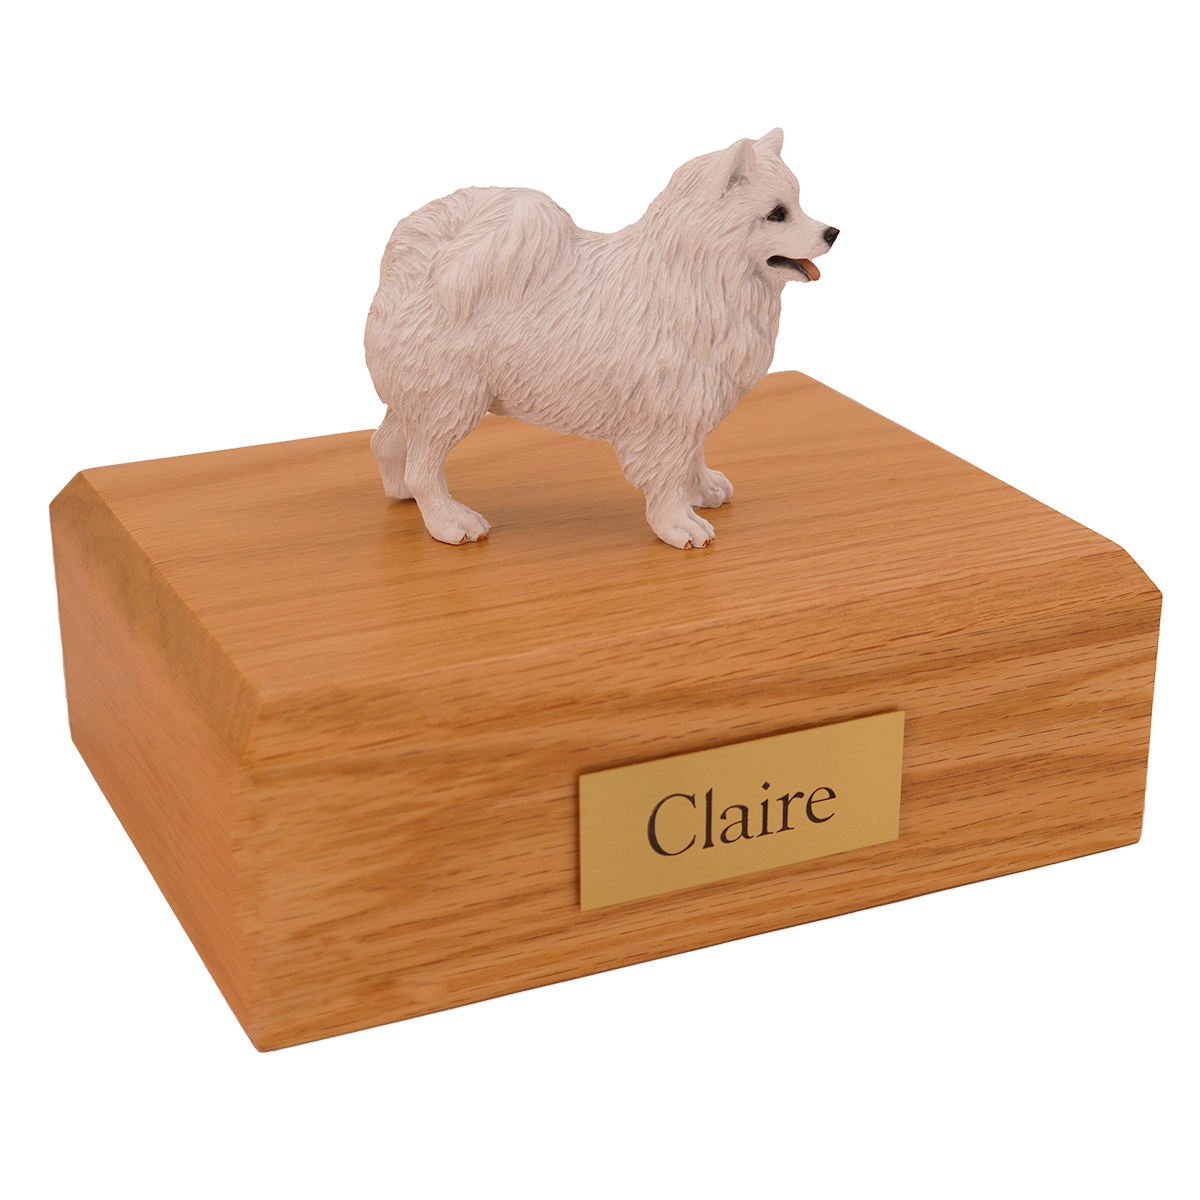 Dog, American Eskimo - Figurine Urn